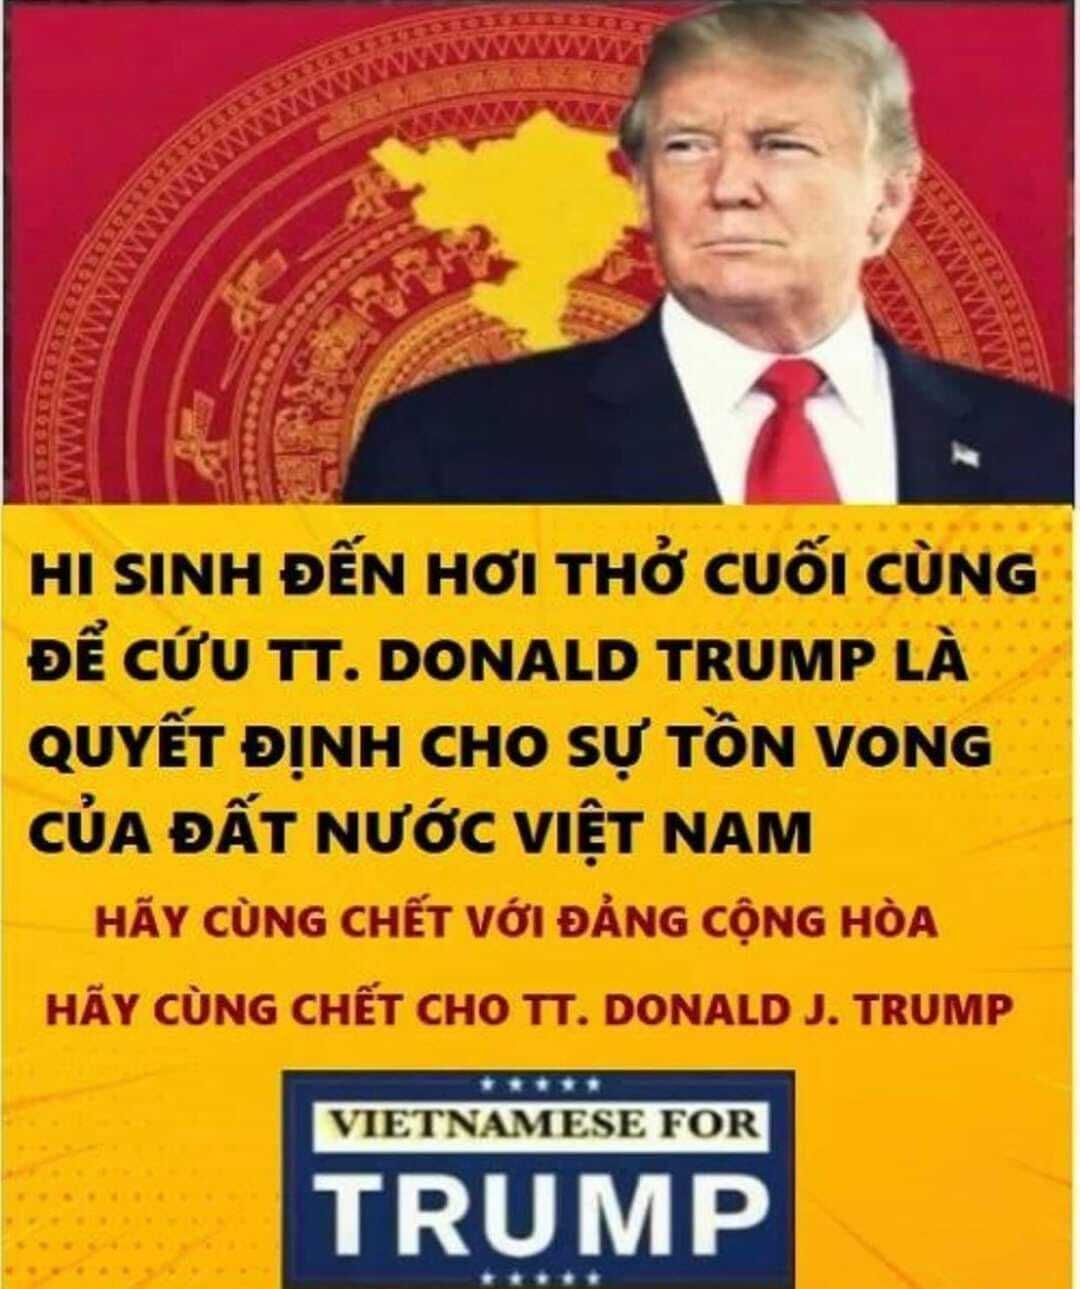 7 chuyển biến của giới dân chửi Việt Nam trong năm 2020 (Kỳ 3)